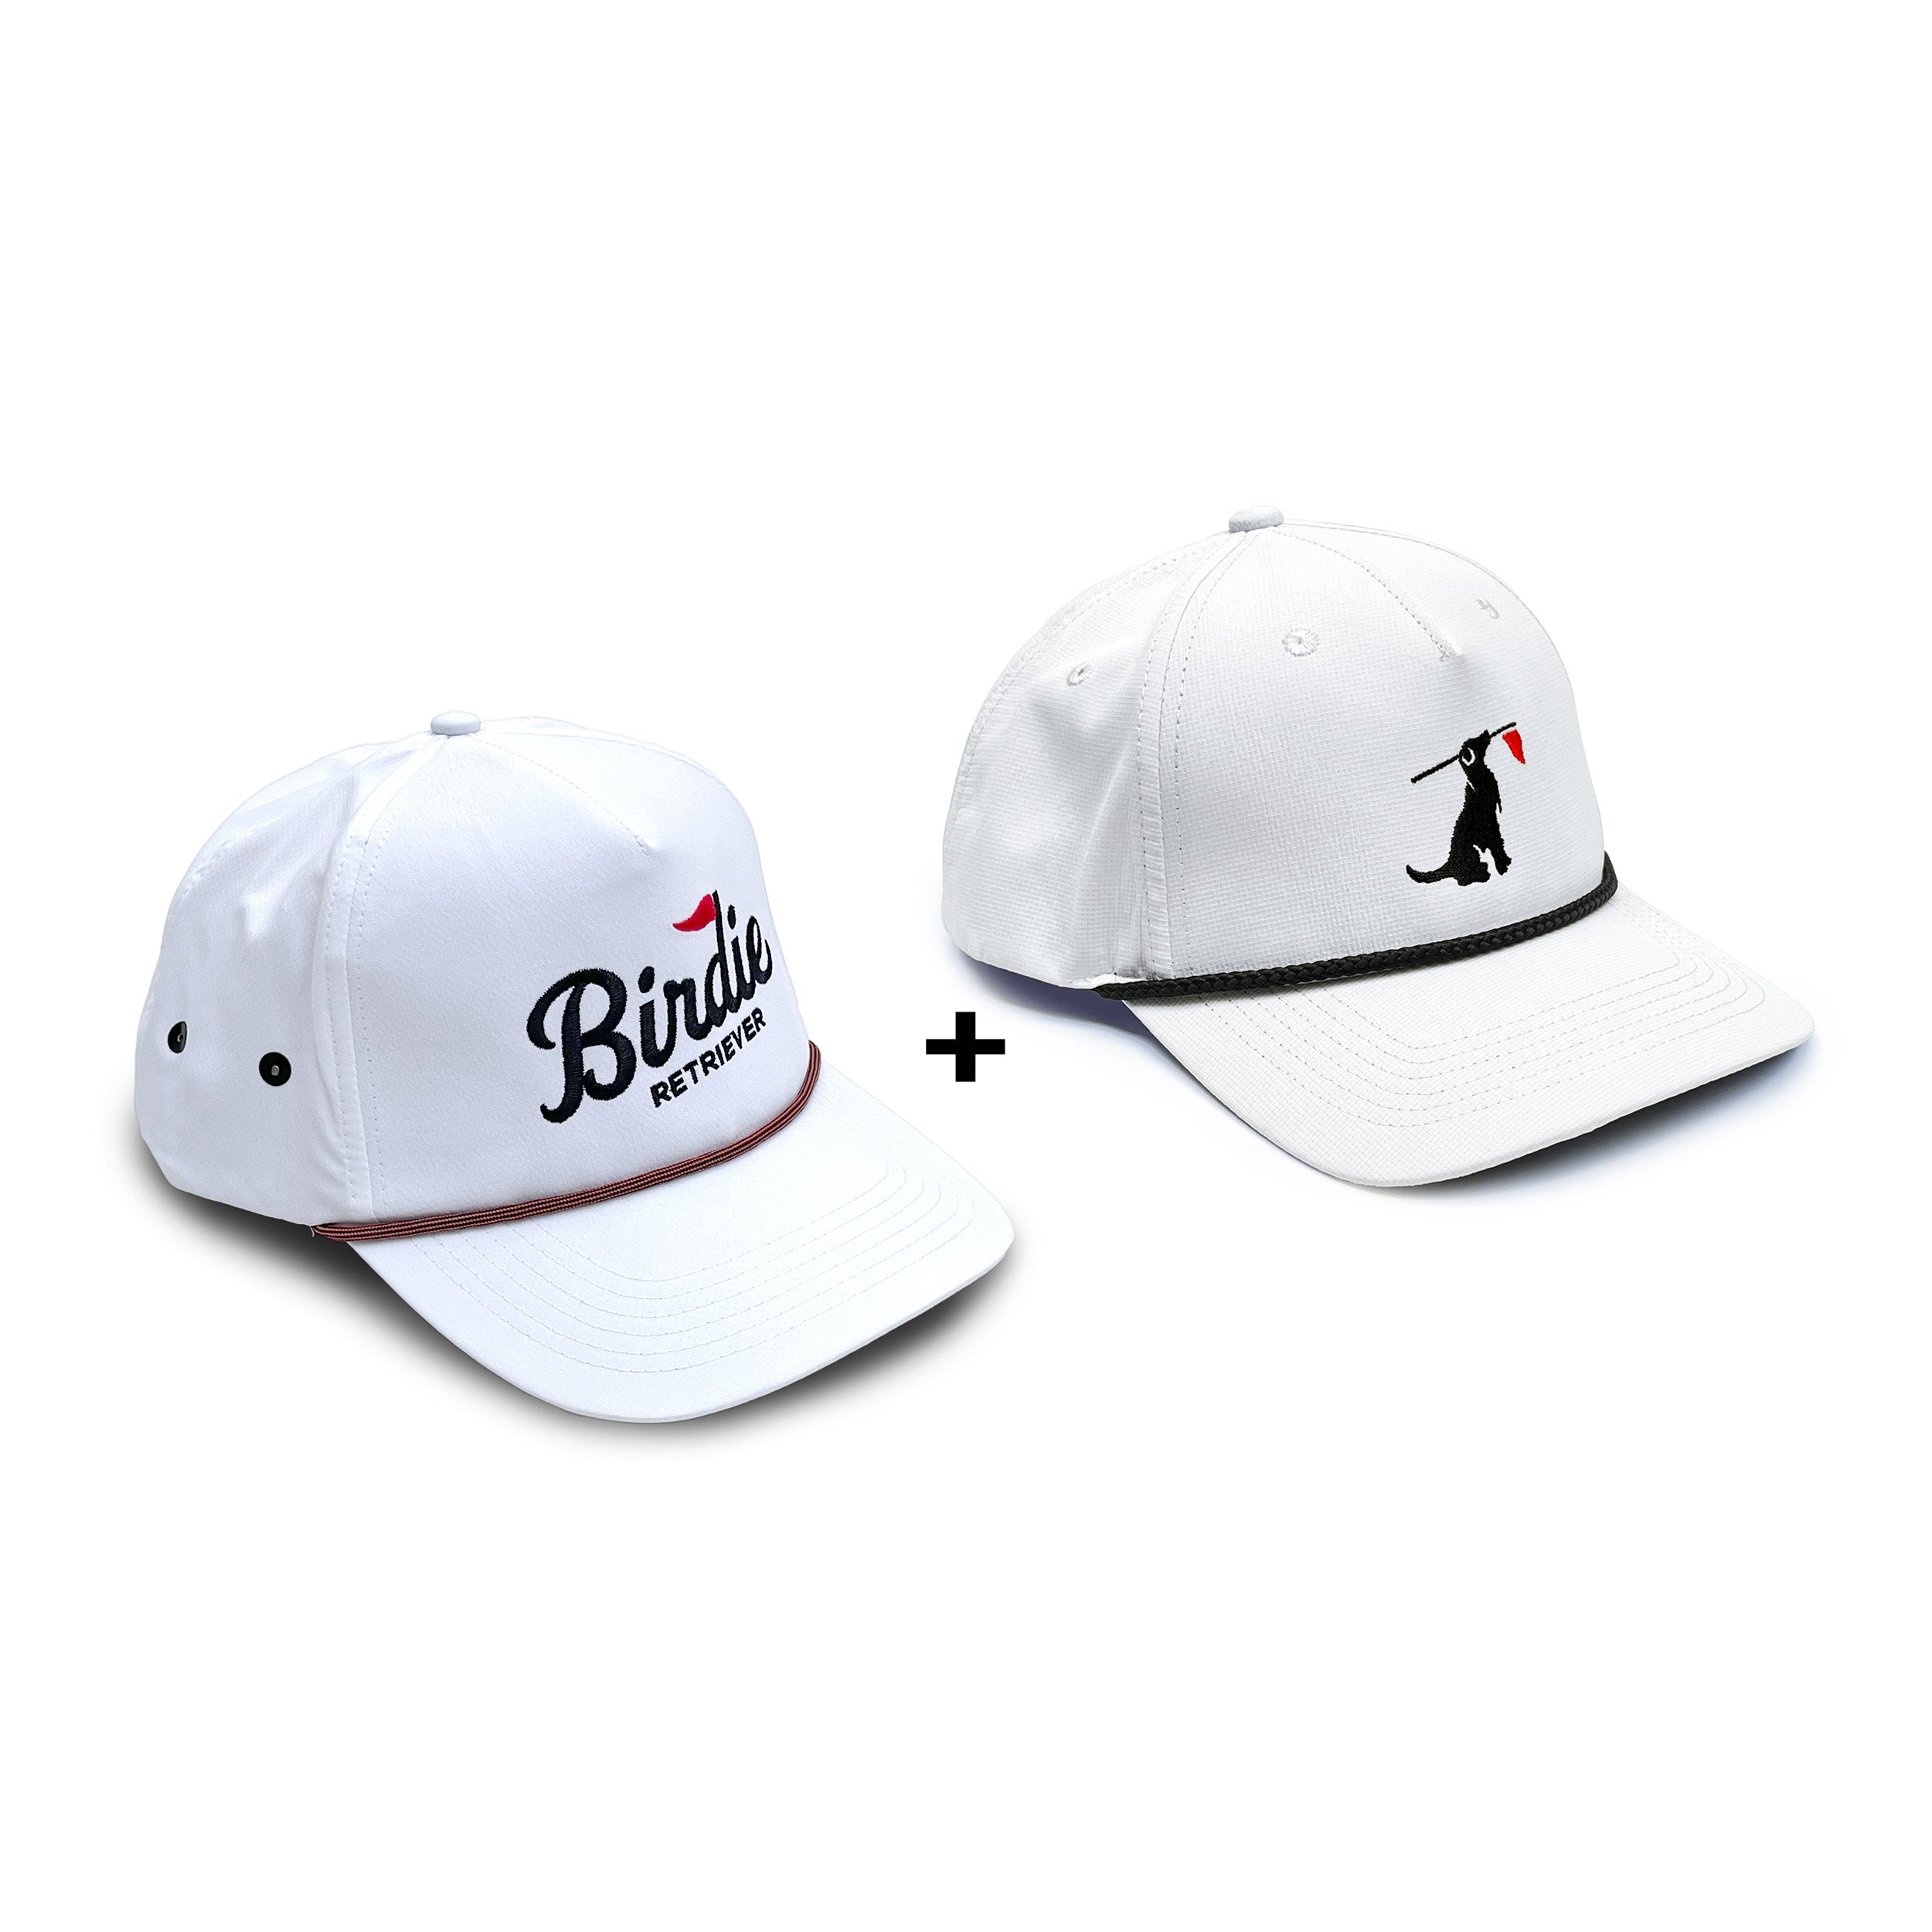 BR Legacy / Rope Hat Bundle